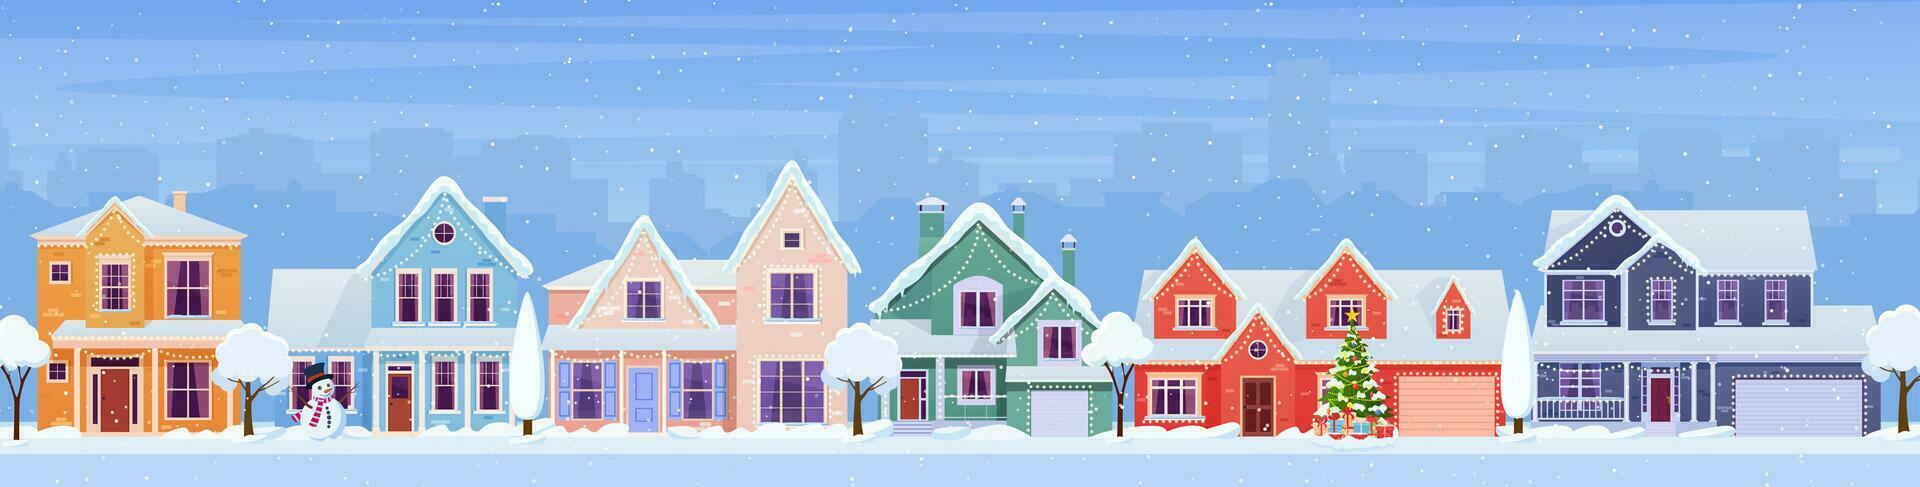 Residenziale case con Natale decorazione a giorno. cartone animato inverno paesaggio strada con neve su tetti e vacanza ghirlande, Natale albero, pupazzo di neve. vettore illustrazione